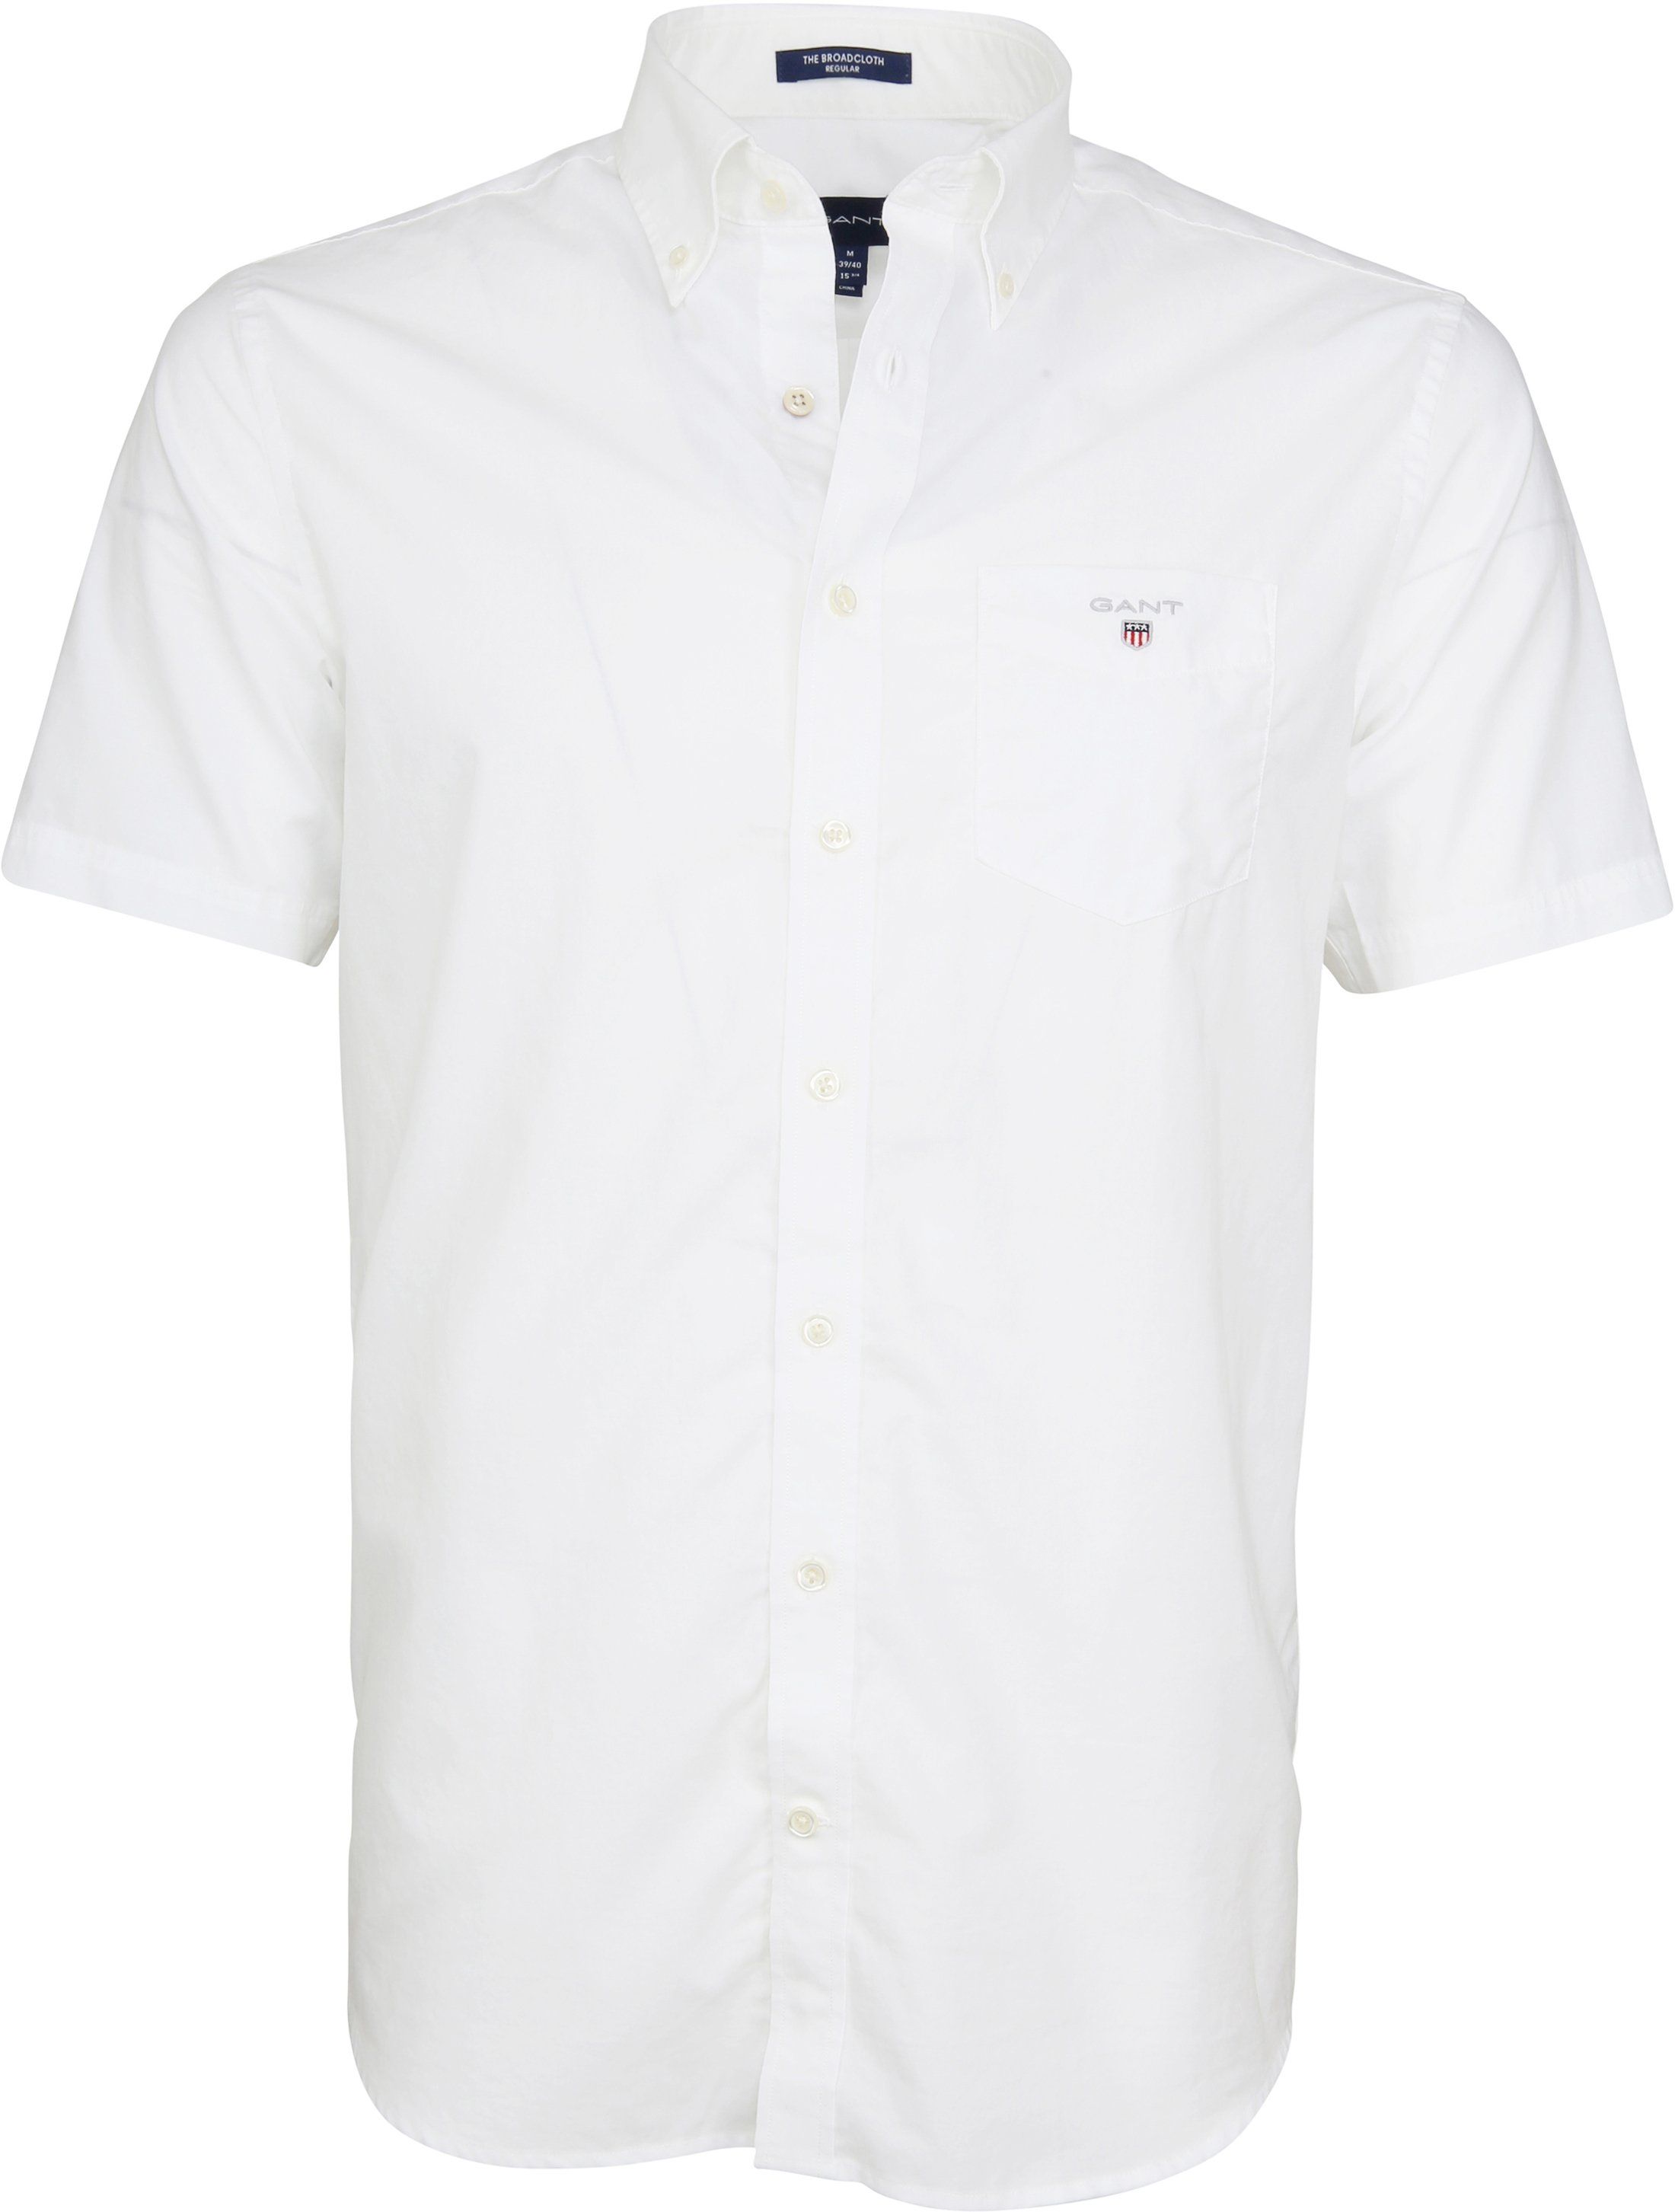 Gant Shirt Broadcloth White size 3XL